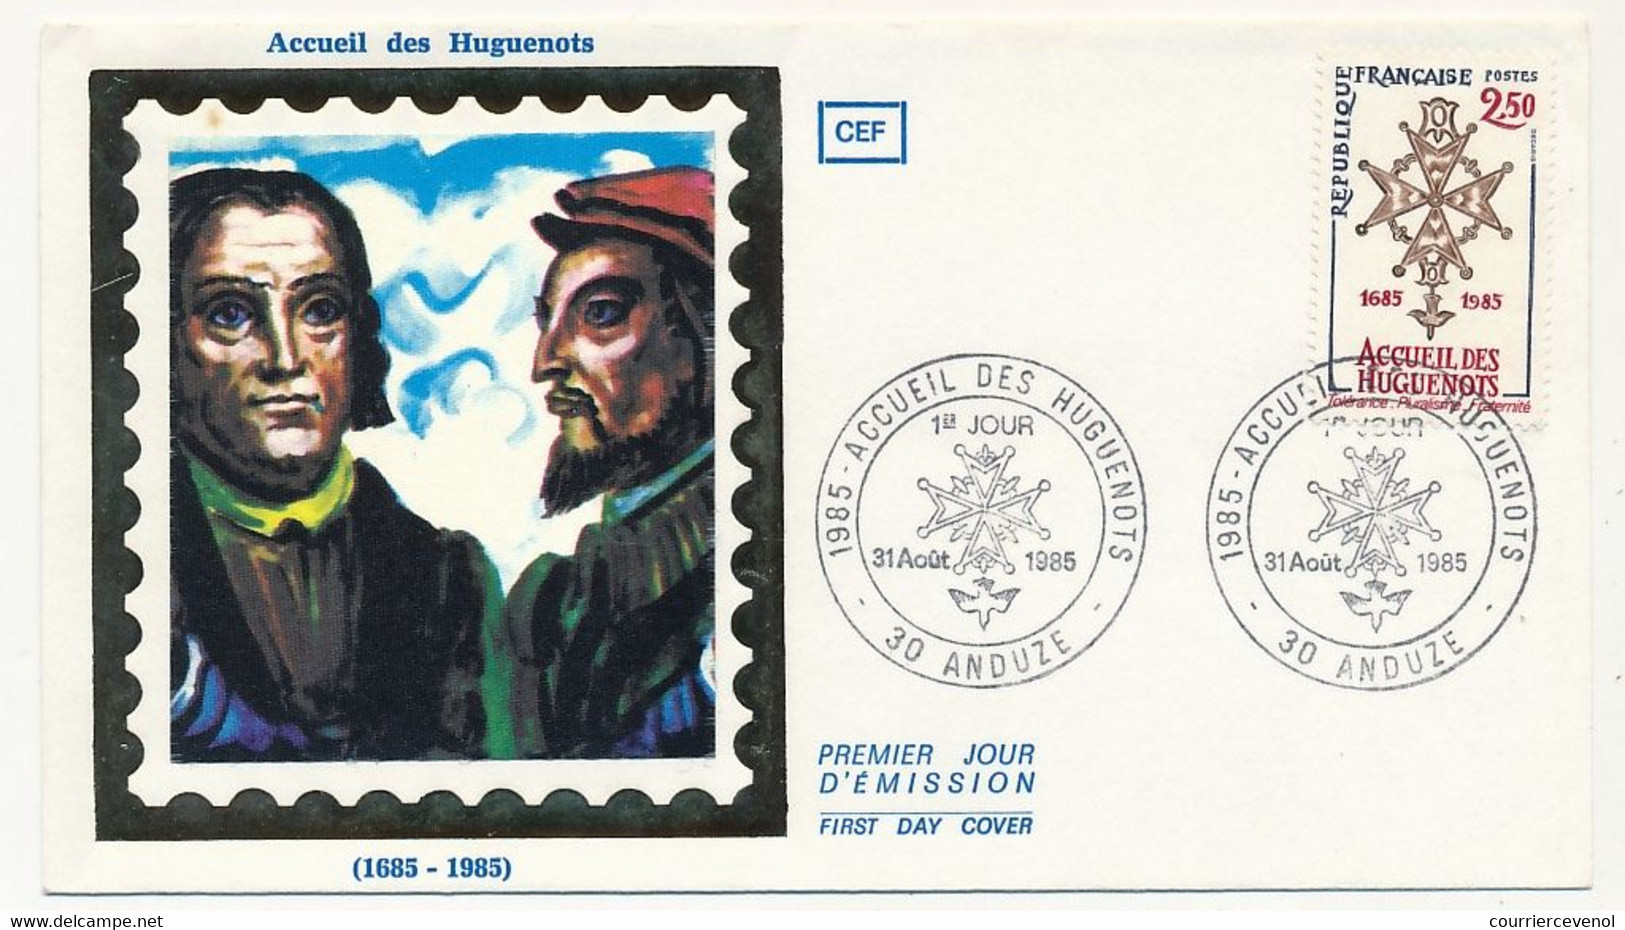 FRANCE - Enveloppe FDC Soie - 2,50 Accueil Des Huguenots - 30 ANDUZE - 31 Aout 1985 - Christianisme